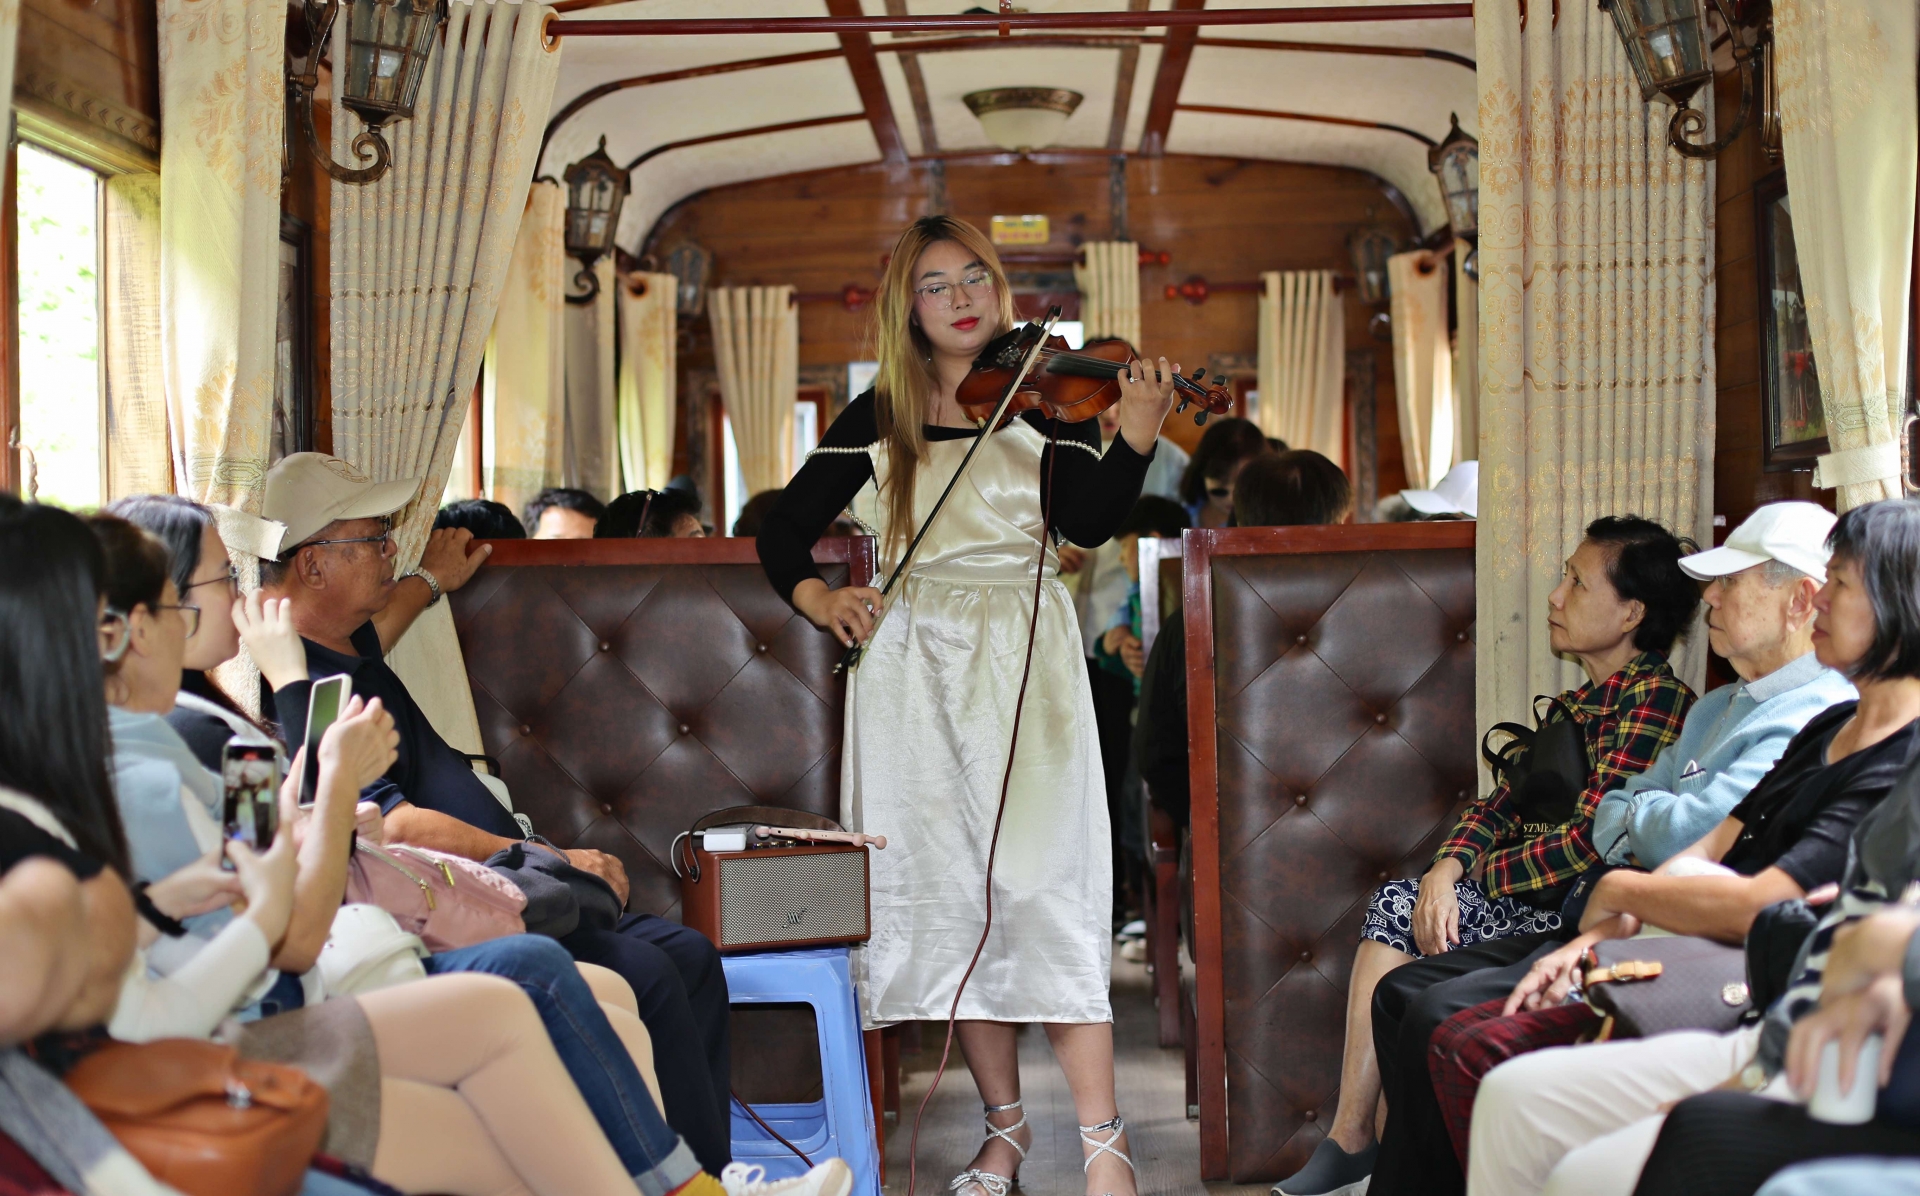 Lần đầu tiên trên đoàn tàu cổ Đà Lạt - Trại Mát, các nghệ sĩ chuyên nghiệp biểu diễn miễn phí phục vụ hành khách.
